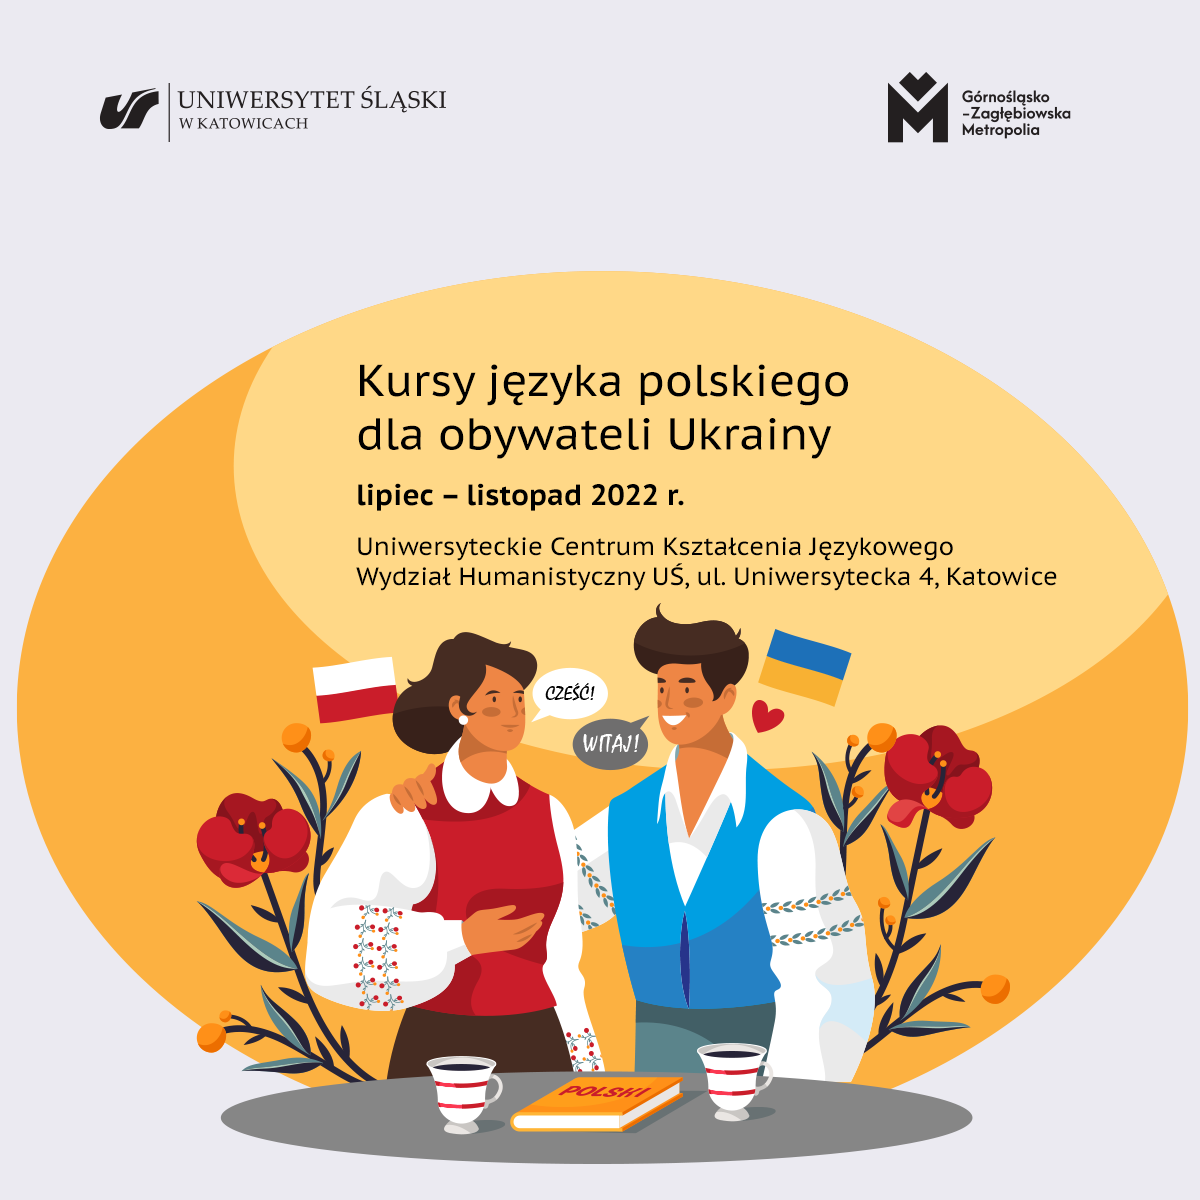 grafika promująca kursy językowe dla obywateli Ukrainy